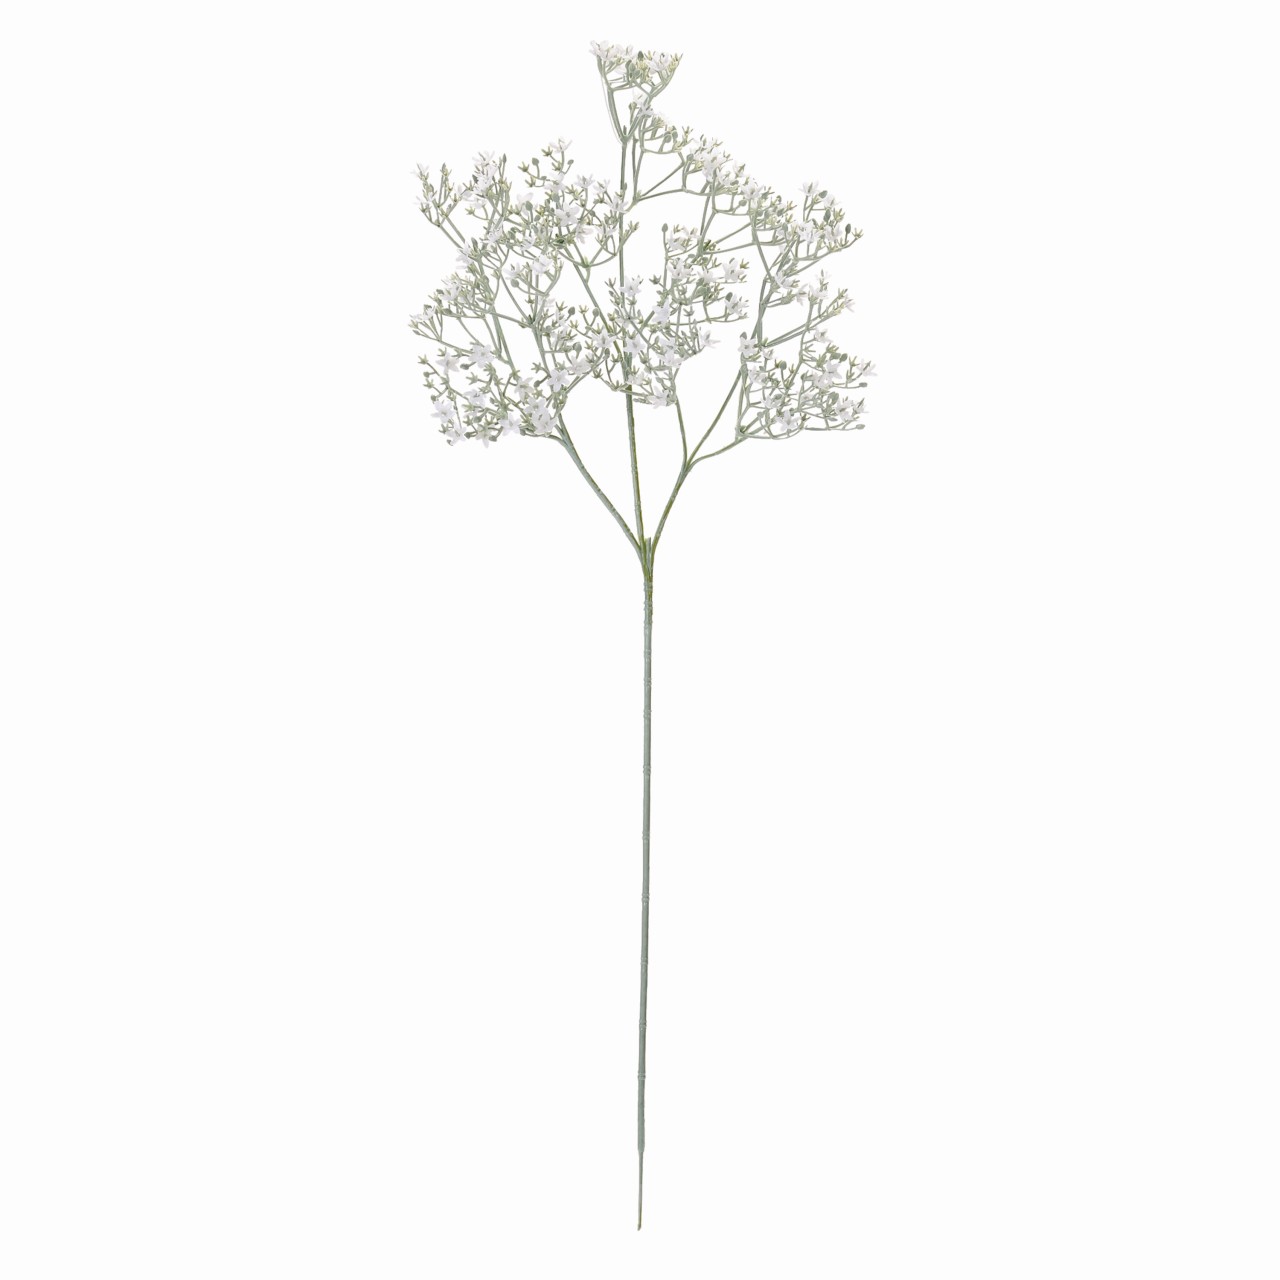 マイフラ 通販 Magiq ブランジプソ ホワイト アーティフィシャルフラワー 造花 Fm かすみ草 ジプソ 花径0 8 1 長さ 約67cm ホワイト Magiq アーティフィシャルフラワー 造花 全国にmagiq 花器 花資材などをお届けします